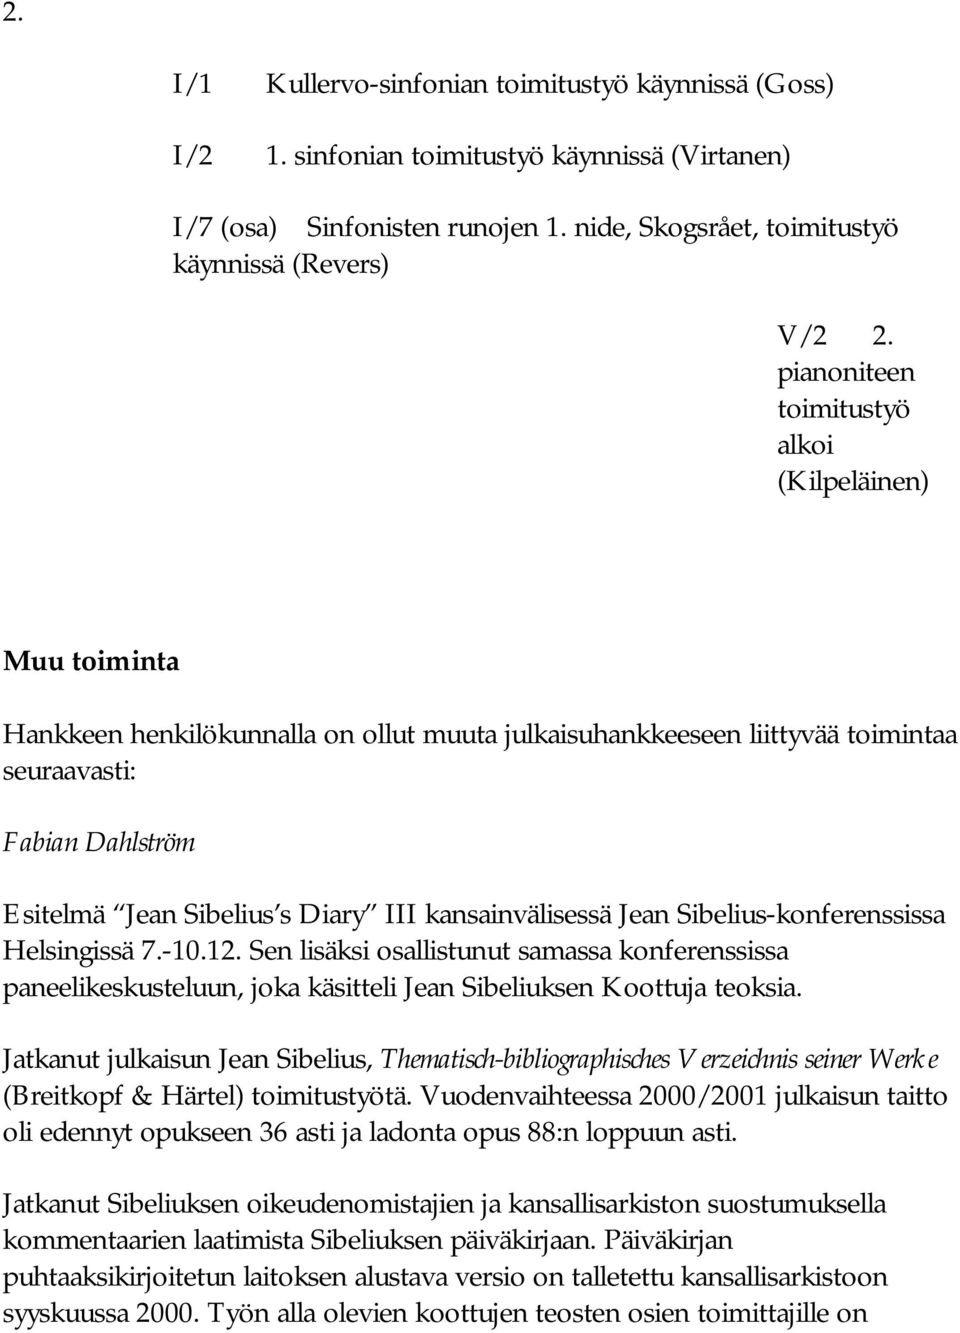 III kansainvälisessä Jean Sibelius-konferenssissa Helsingissä 7.-10.12. Sen lisäksi osallistunut samassa konferenssissa paneelikeskusteluun, joka käsitteli Jean Sibeliuksen Koottuja teoksia.